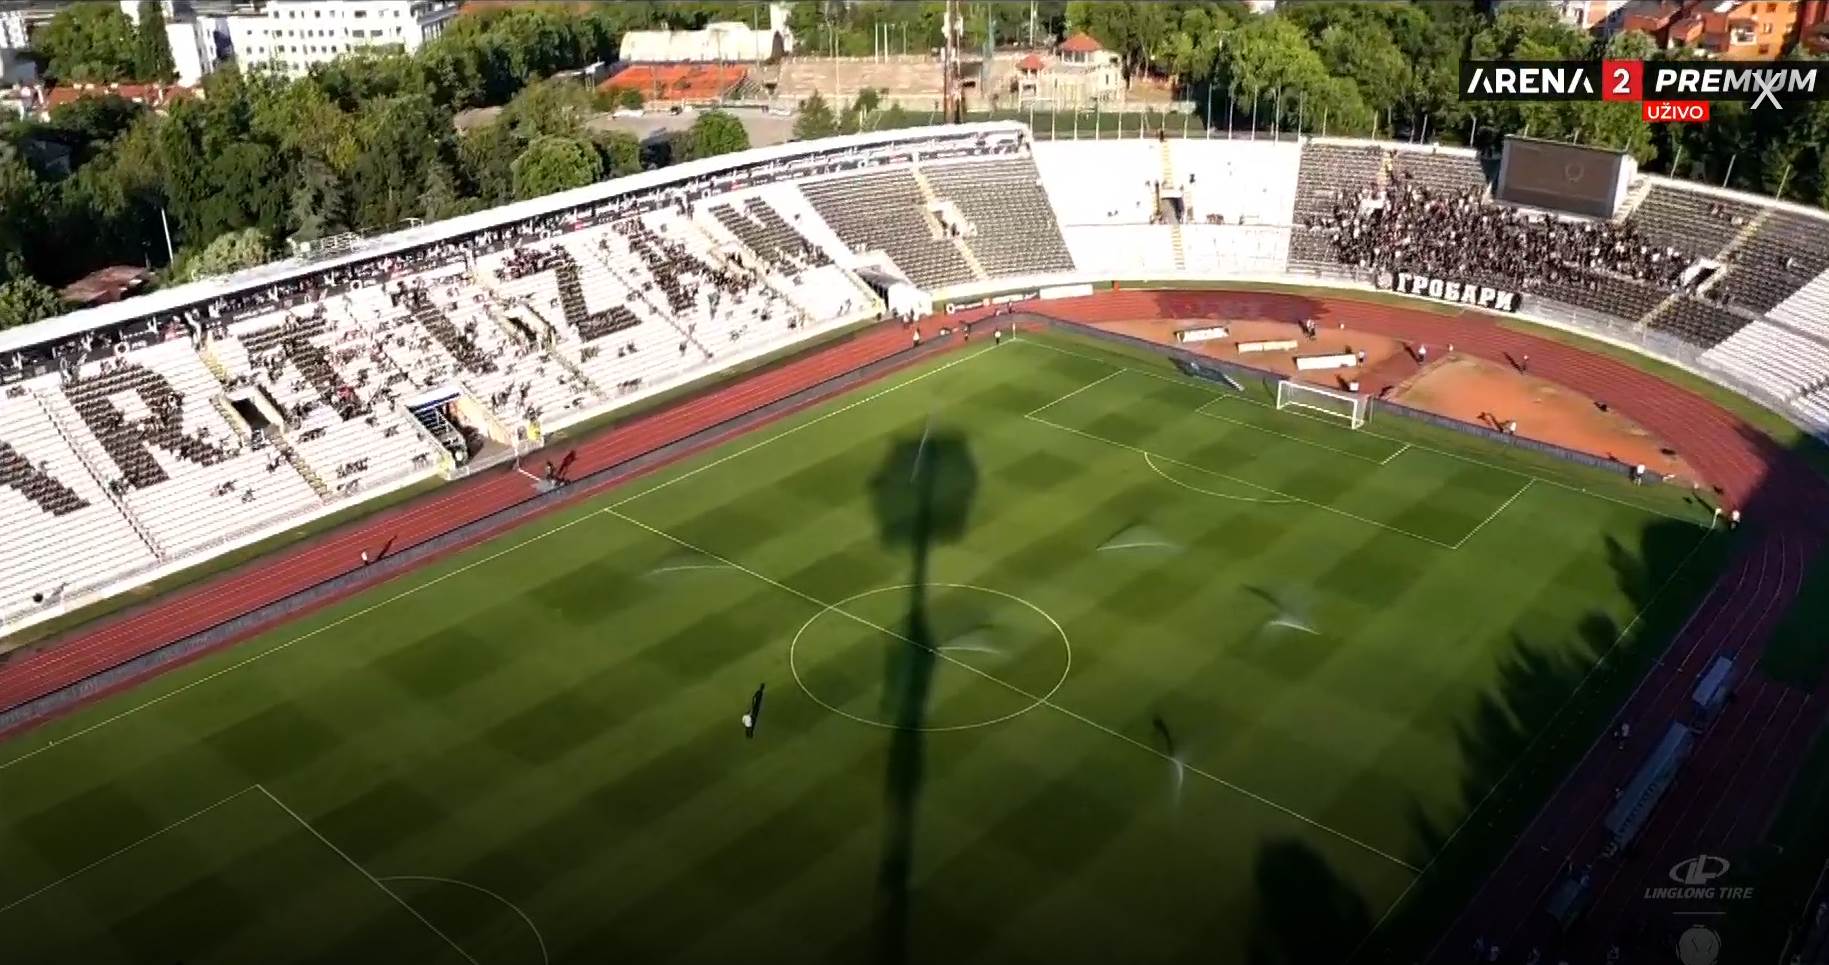 Radnički - Partizan, a TV prenos uživo na Arena sport - Sportal